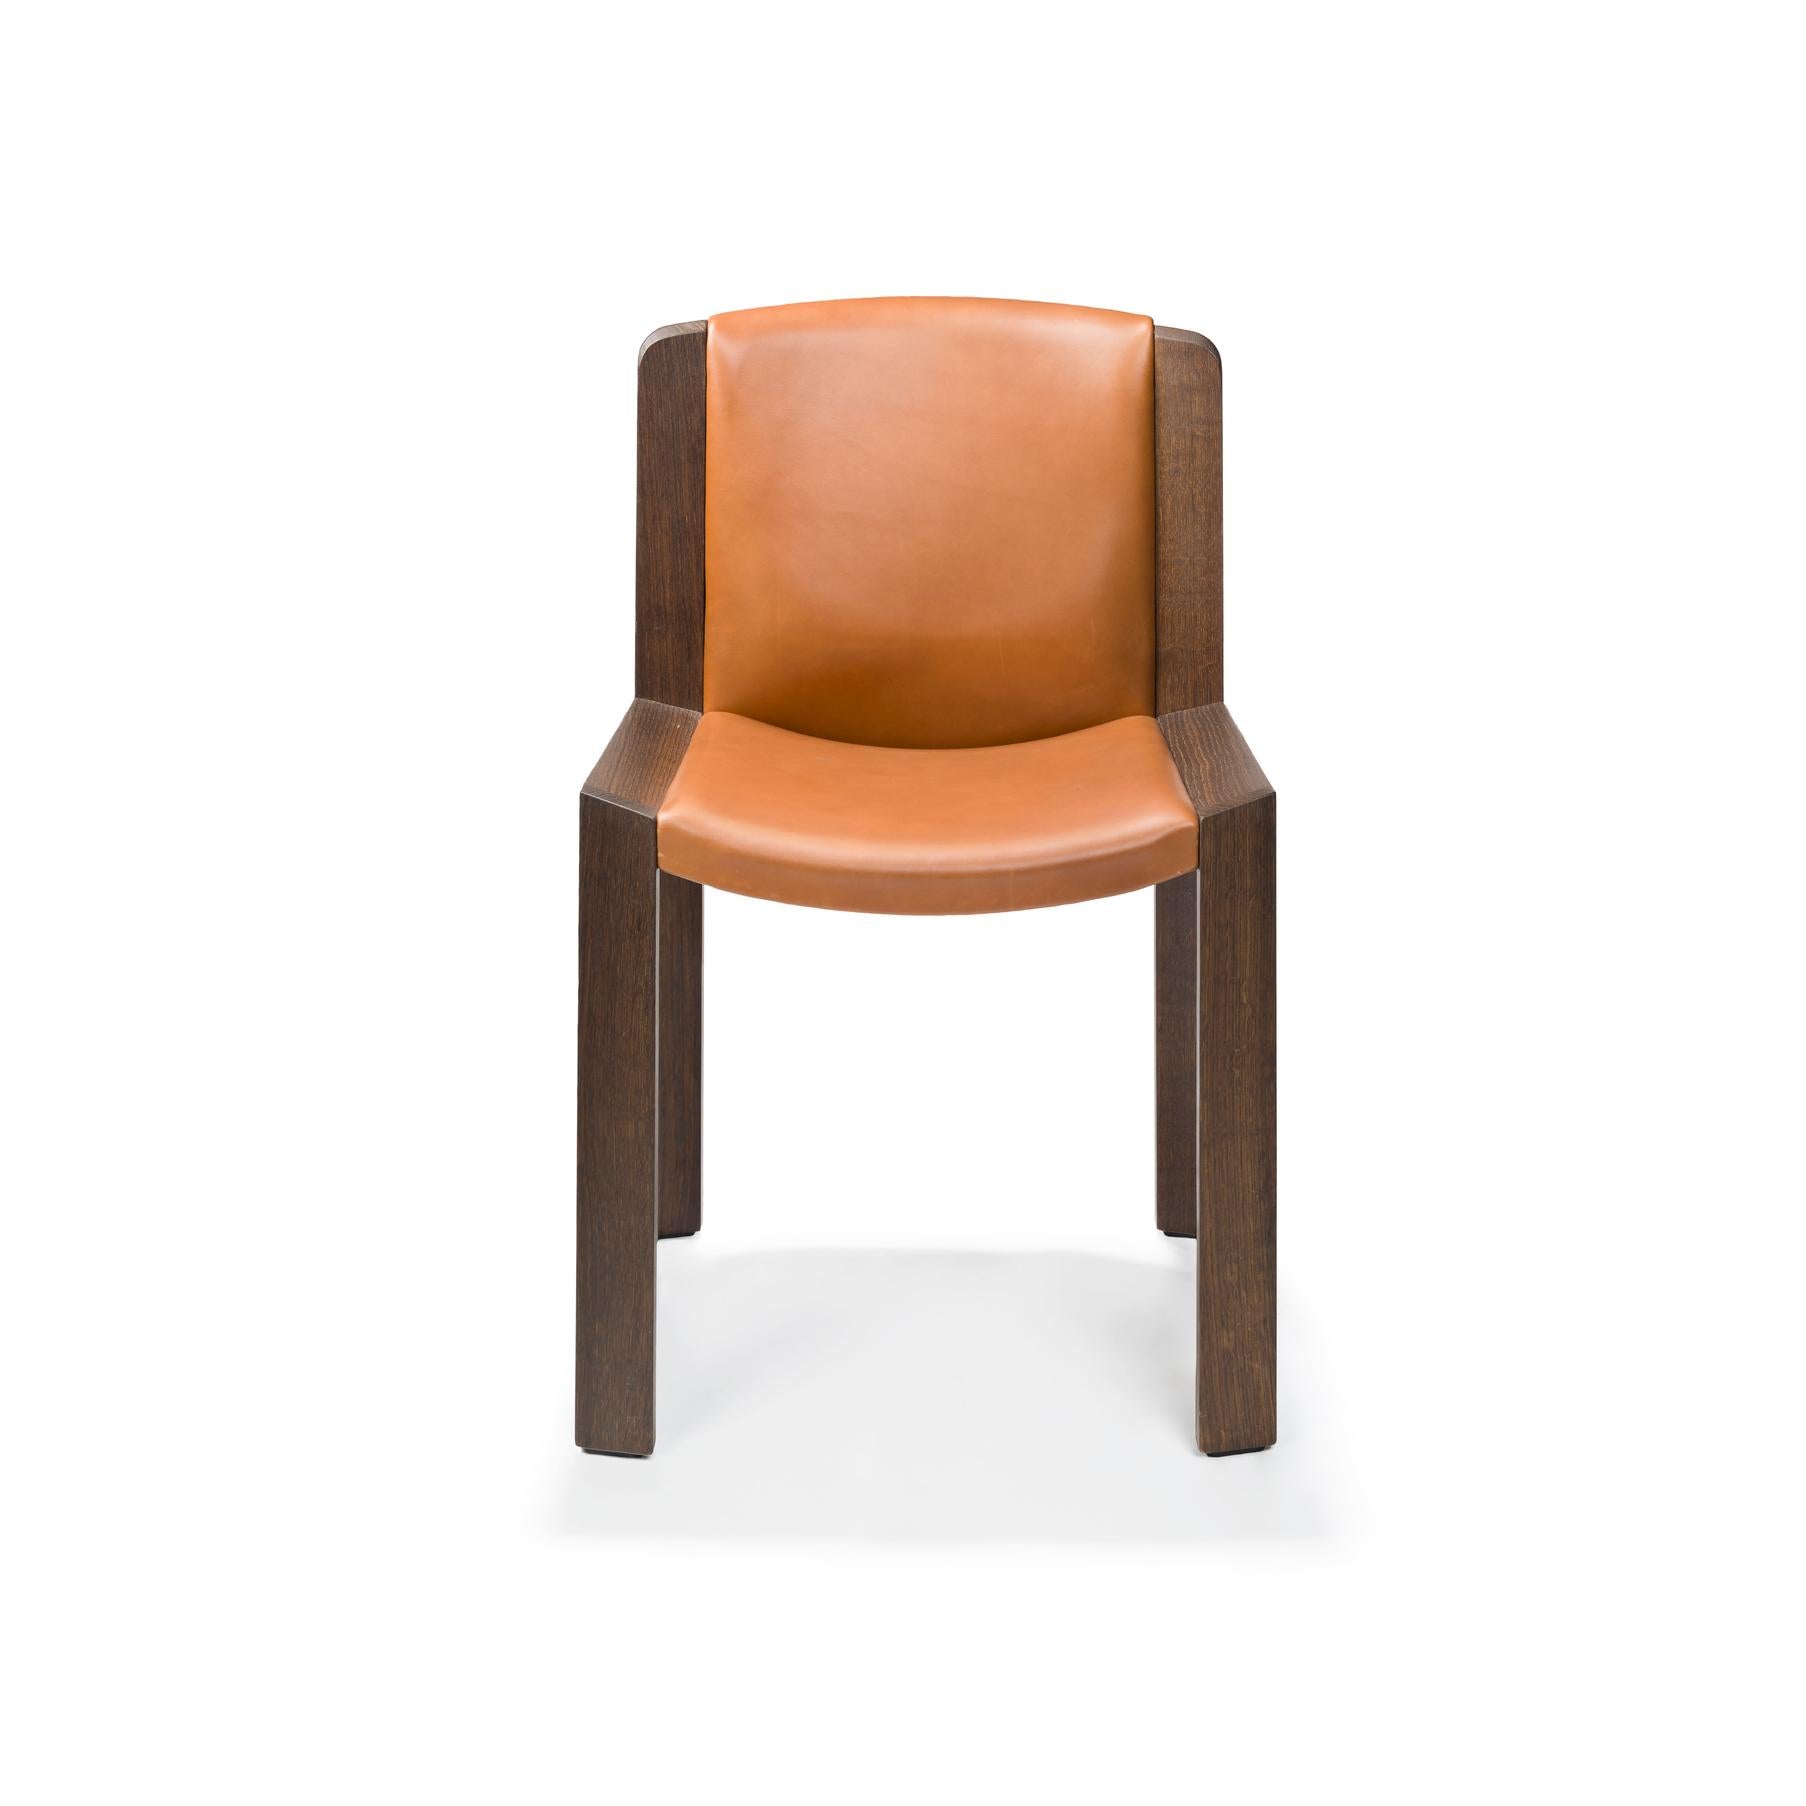 Stuhl, entworfen von Joe Colombo im Jahr 1965. 

Der von dem zukunftsorientierten italienischen Designer Joe Colombo entworfene Stuhl 300 ist ein wunderschönes Beispiel für sein funktionales Designverständnis. Sitz und Rückenlehne sind gepolstert